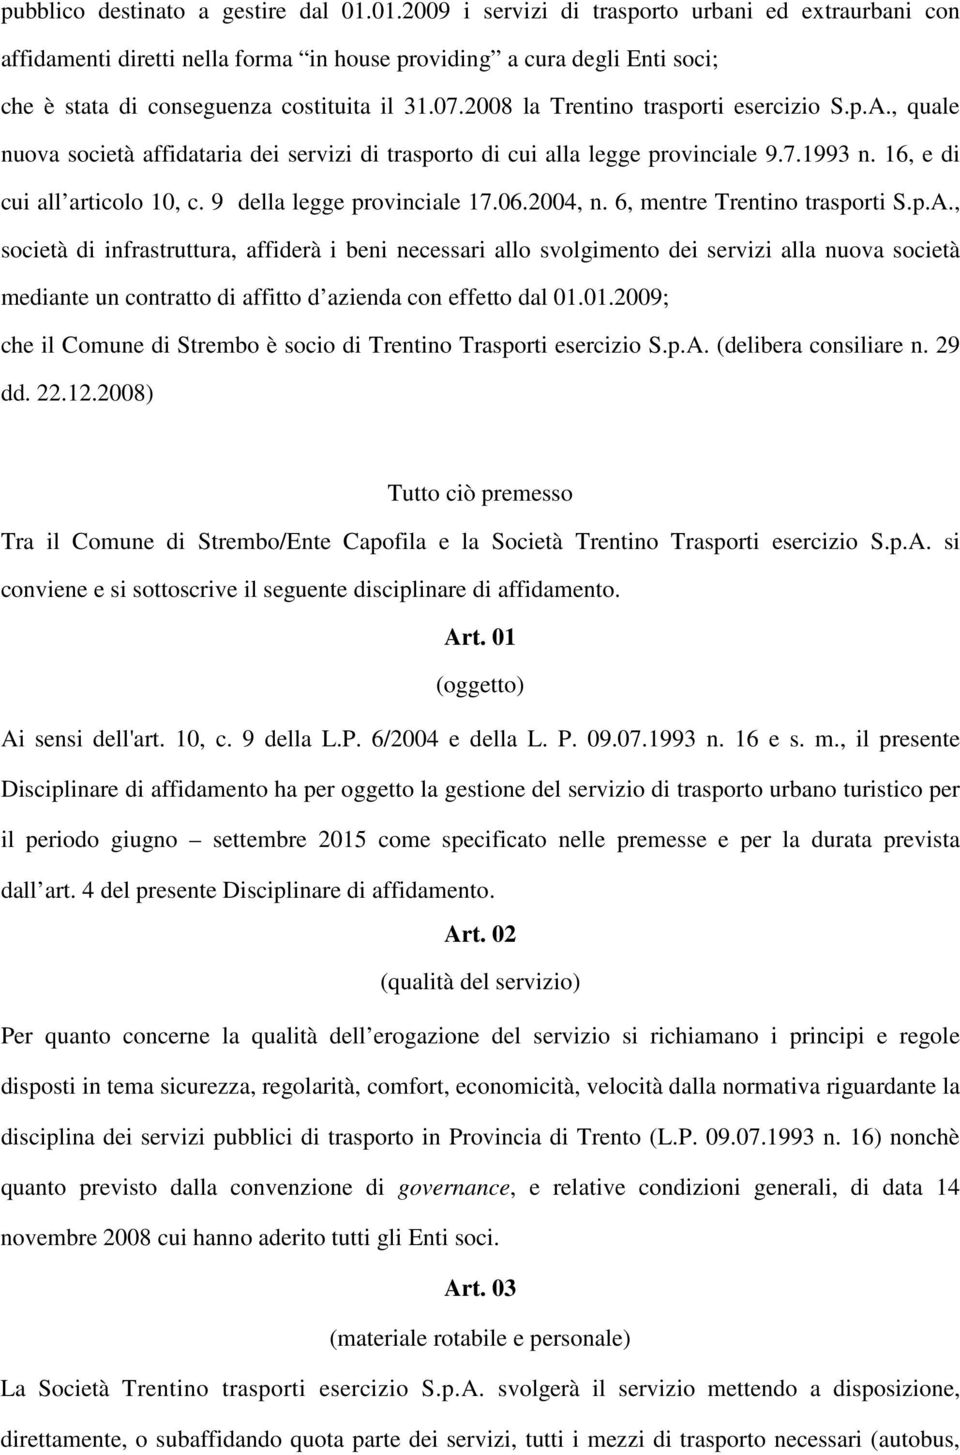 2008 la Trentino trasporti esercizio S.p.A., quale nuova società affidataria dei servizi di trasporto di cui alla legge provinciale 9.7.1993 n. 16, e di cui all articolo 10, c.